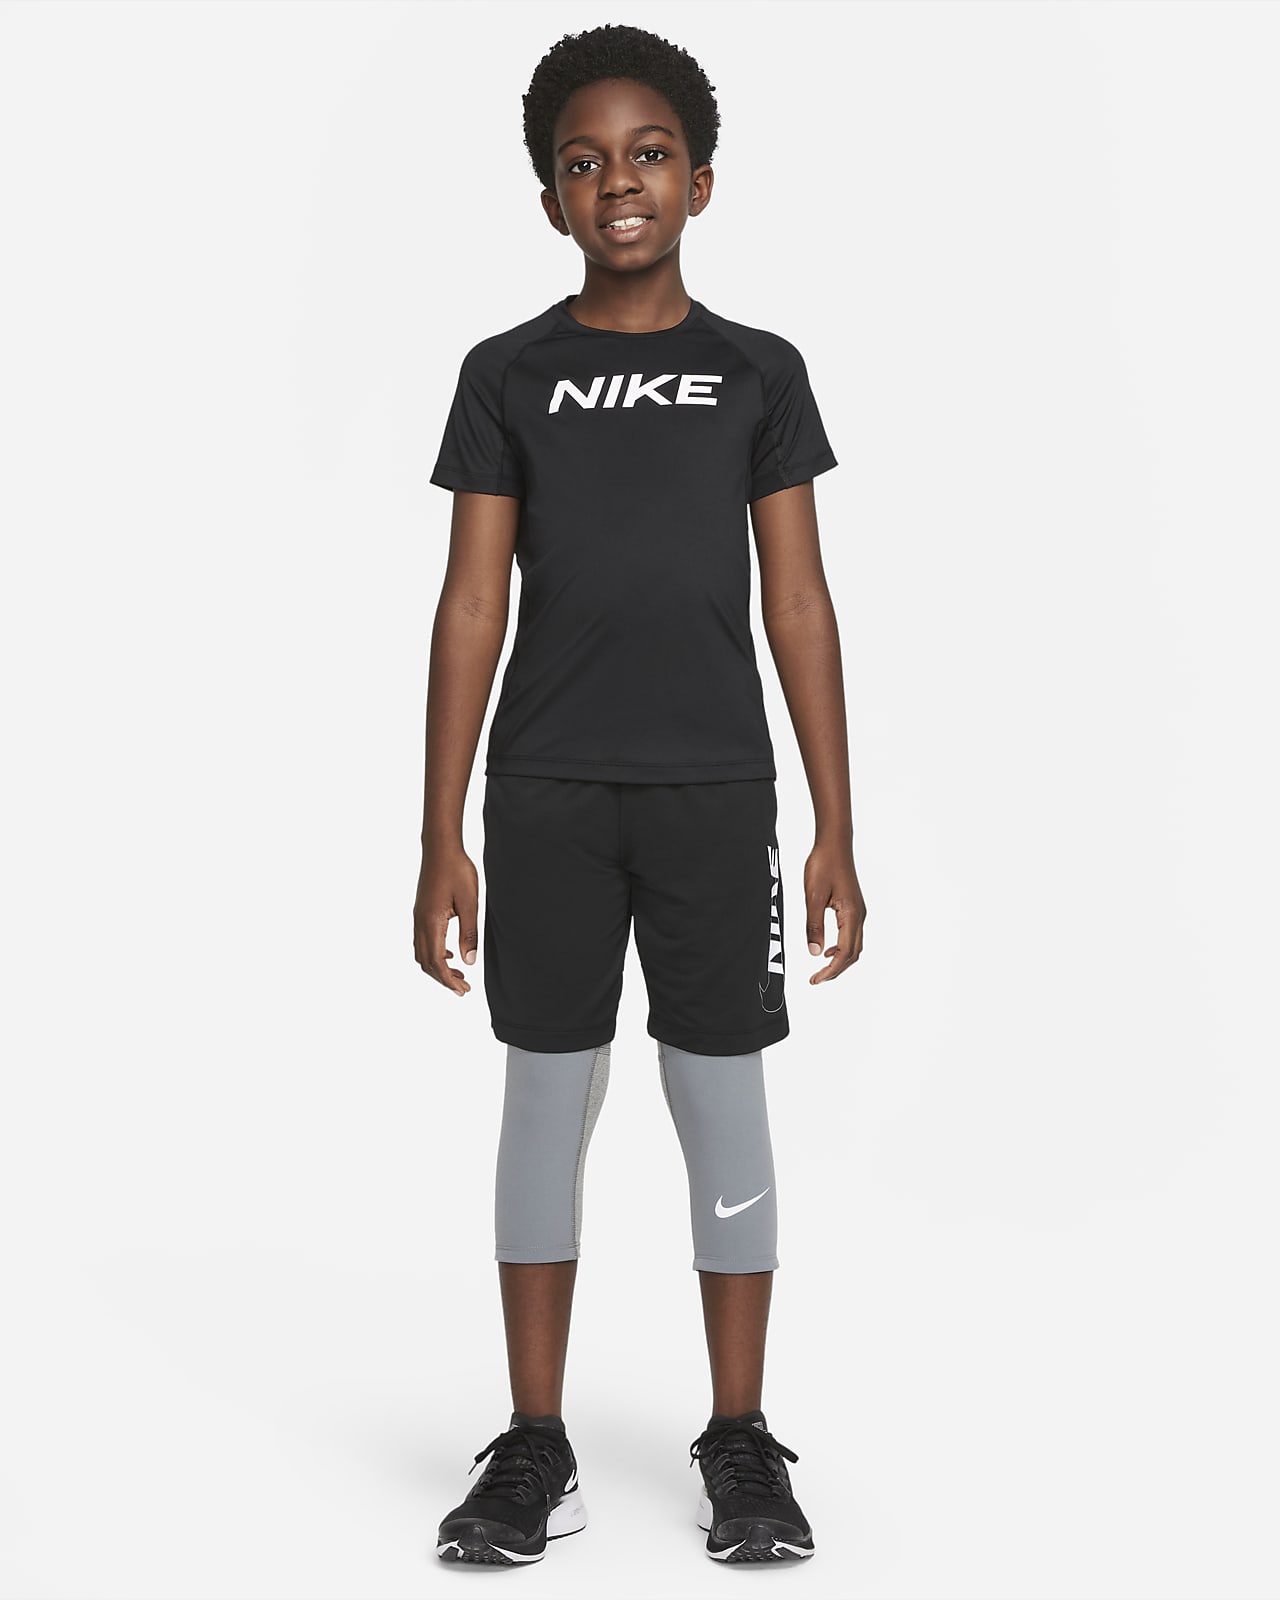 Nike Pro Men's Tennis Short Tights - Smoke Grey/Black